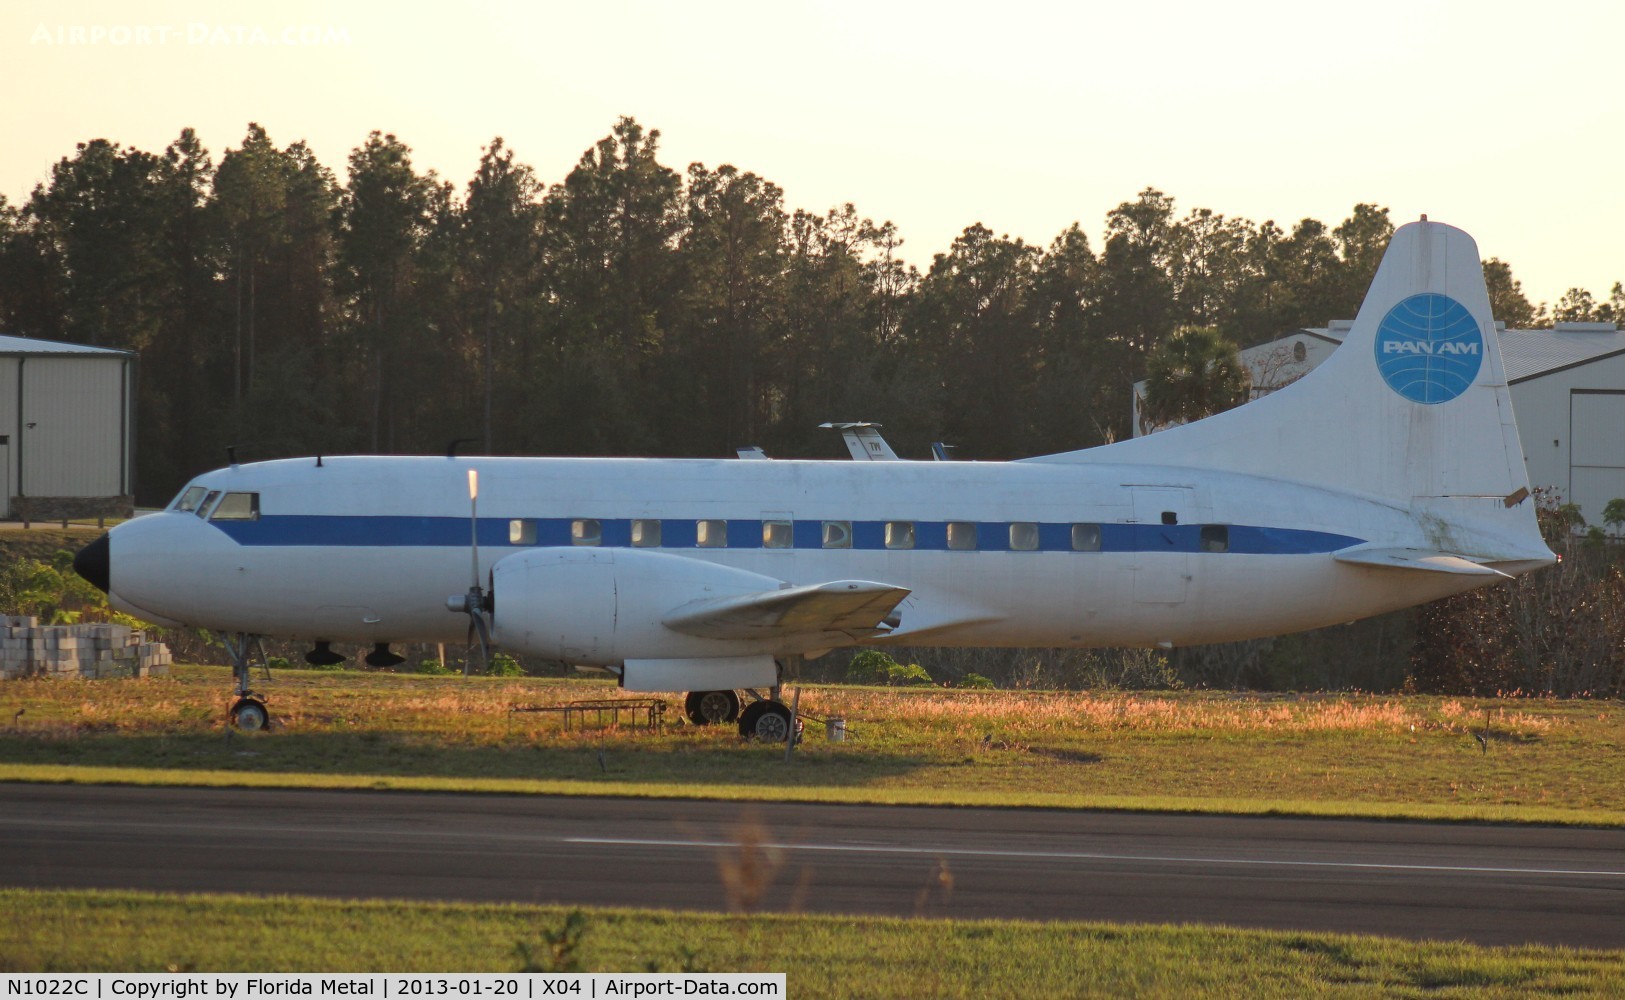 N1022C, Convair 240 C/N 147, Convair 240 in Pan Am colors, has sat here for a few years